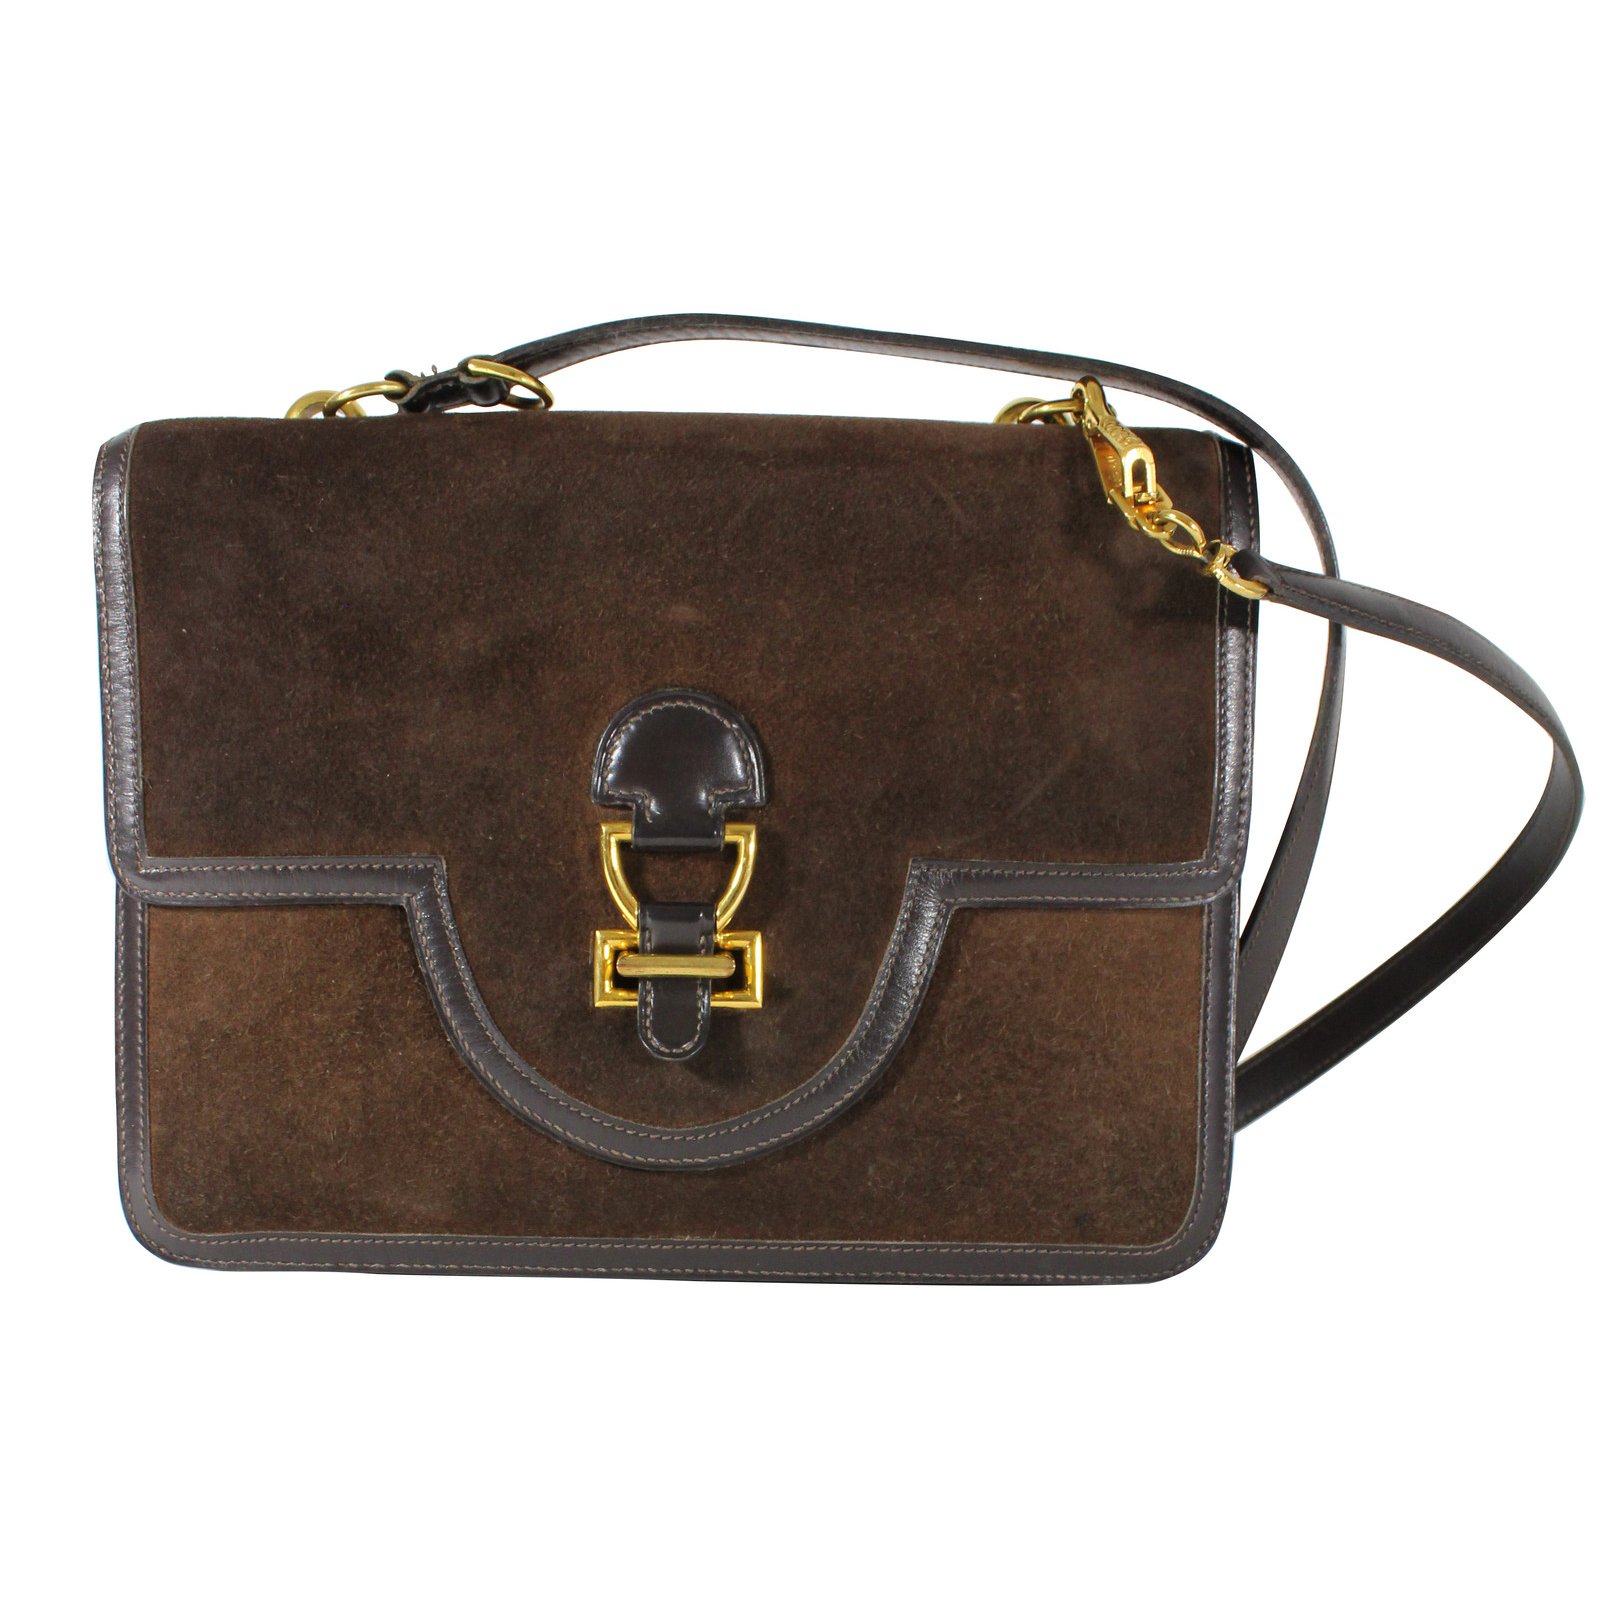 Hermes Vintage Tan Suede Sac Martine Shoulder Bag Handbag Purse